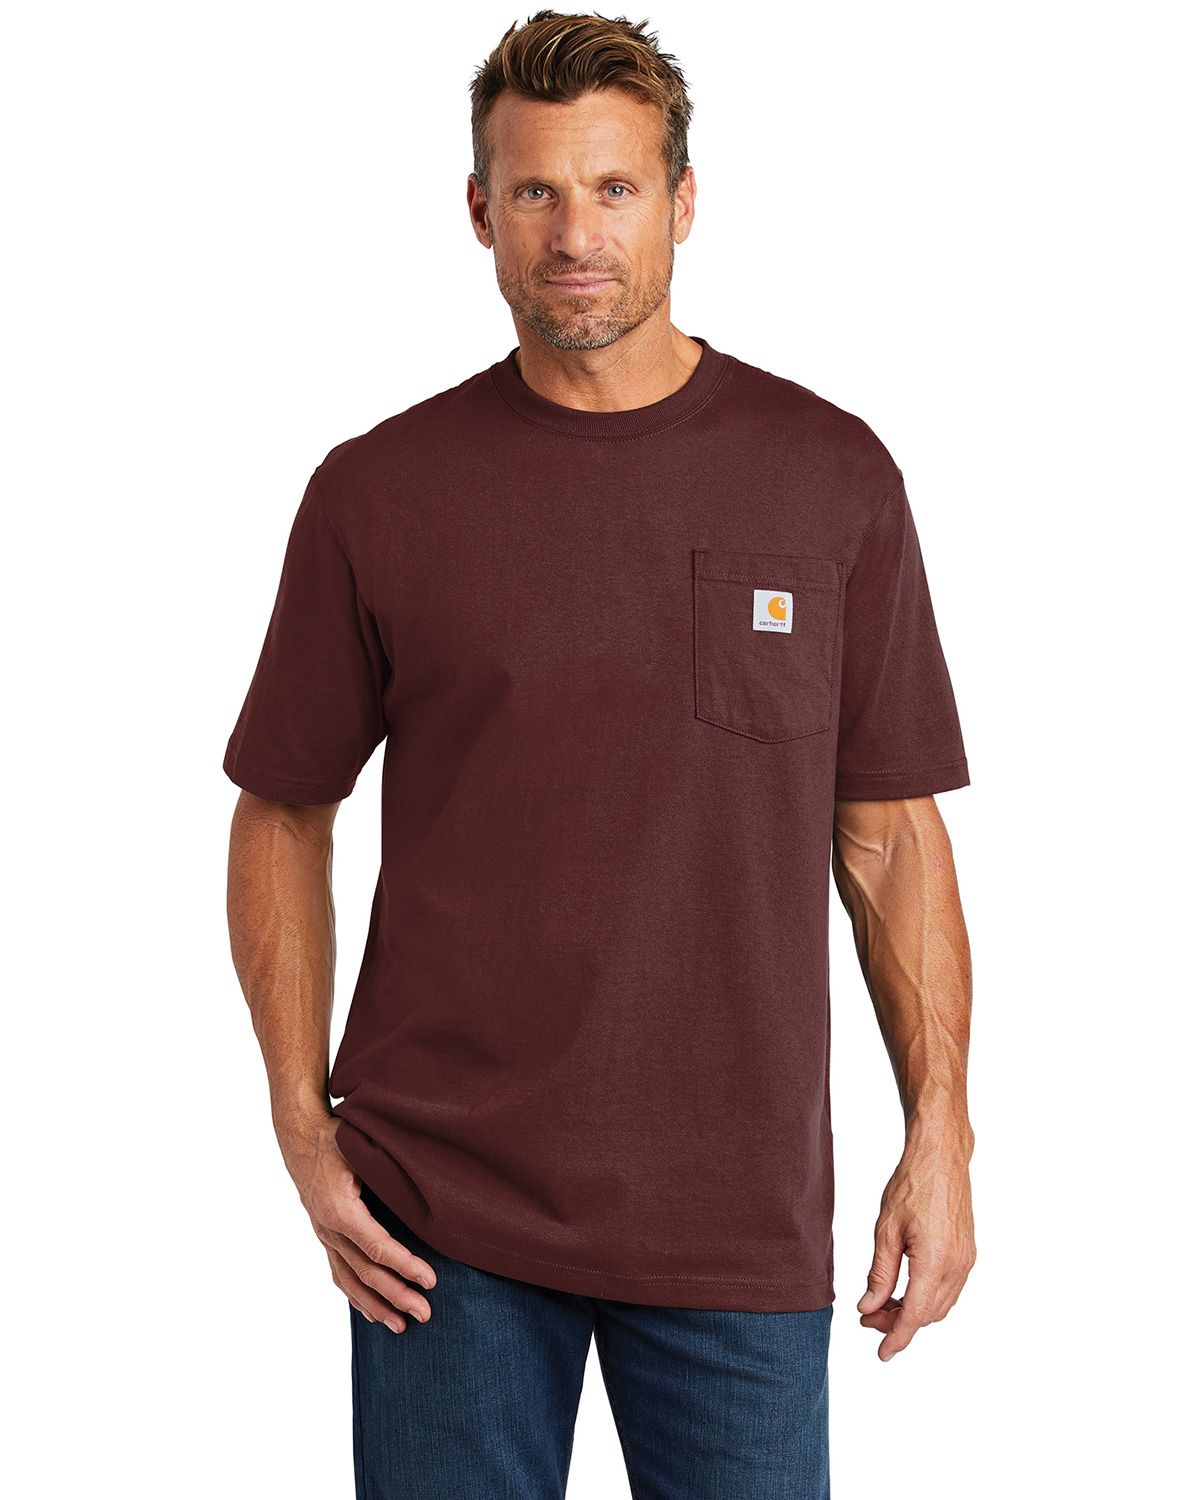 Carhartt CTK87 Workwear Pocket Short Sleeve T-Shirt for Business Uniforms